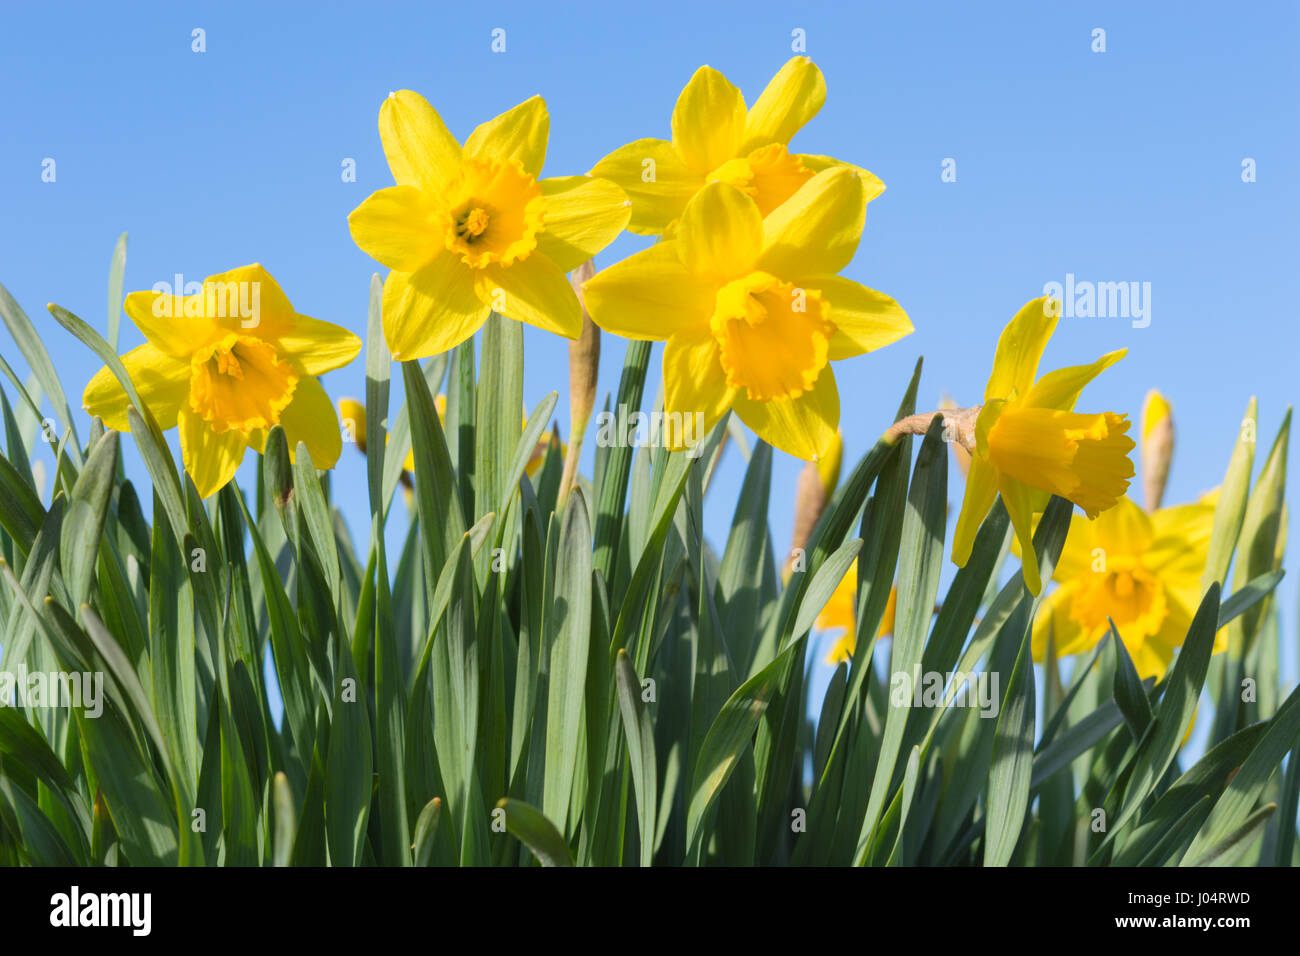 Glade spring ensoleillée avec vue de dessous de belles fleurs Narcisse jaune contre ciel bleu clair Banque D'Images